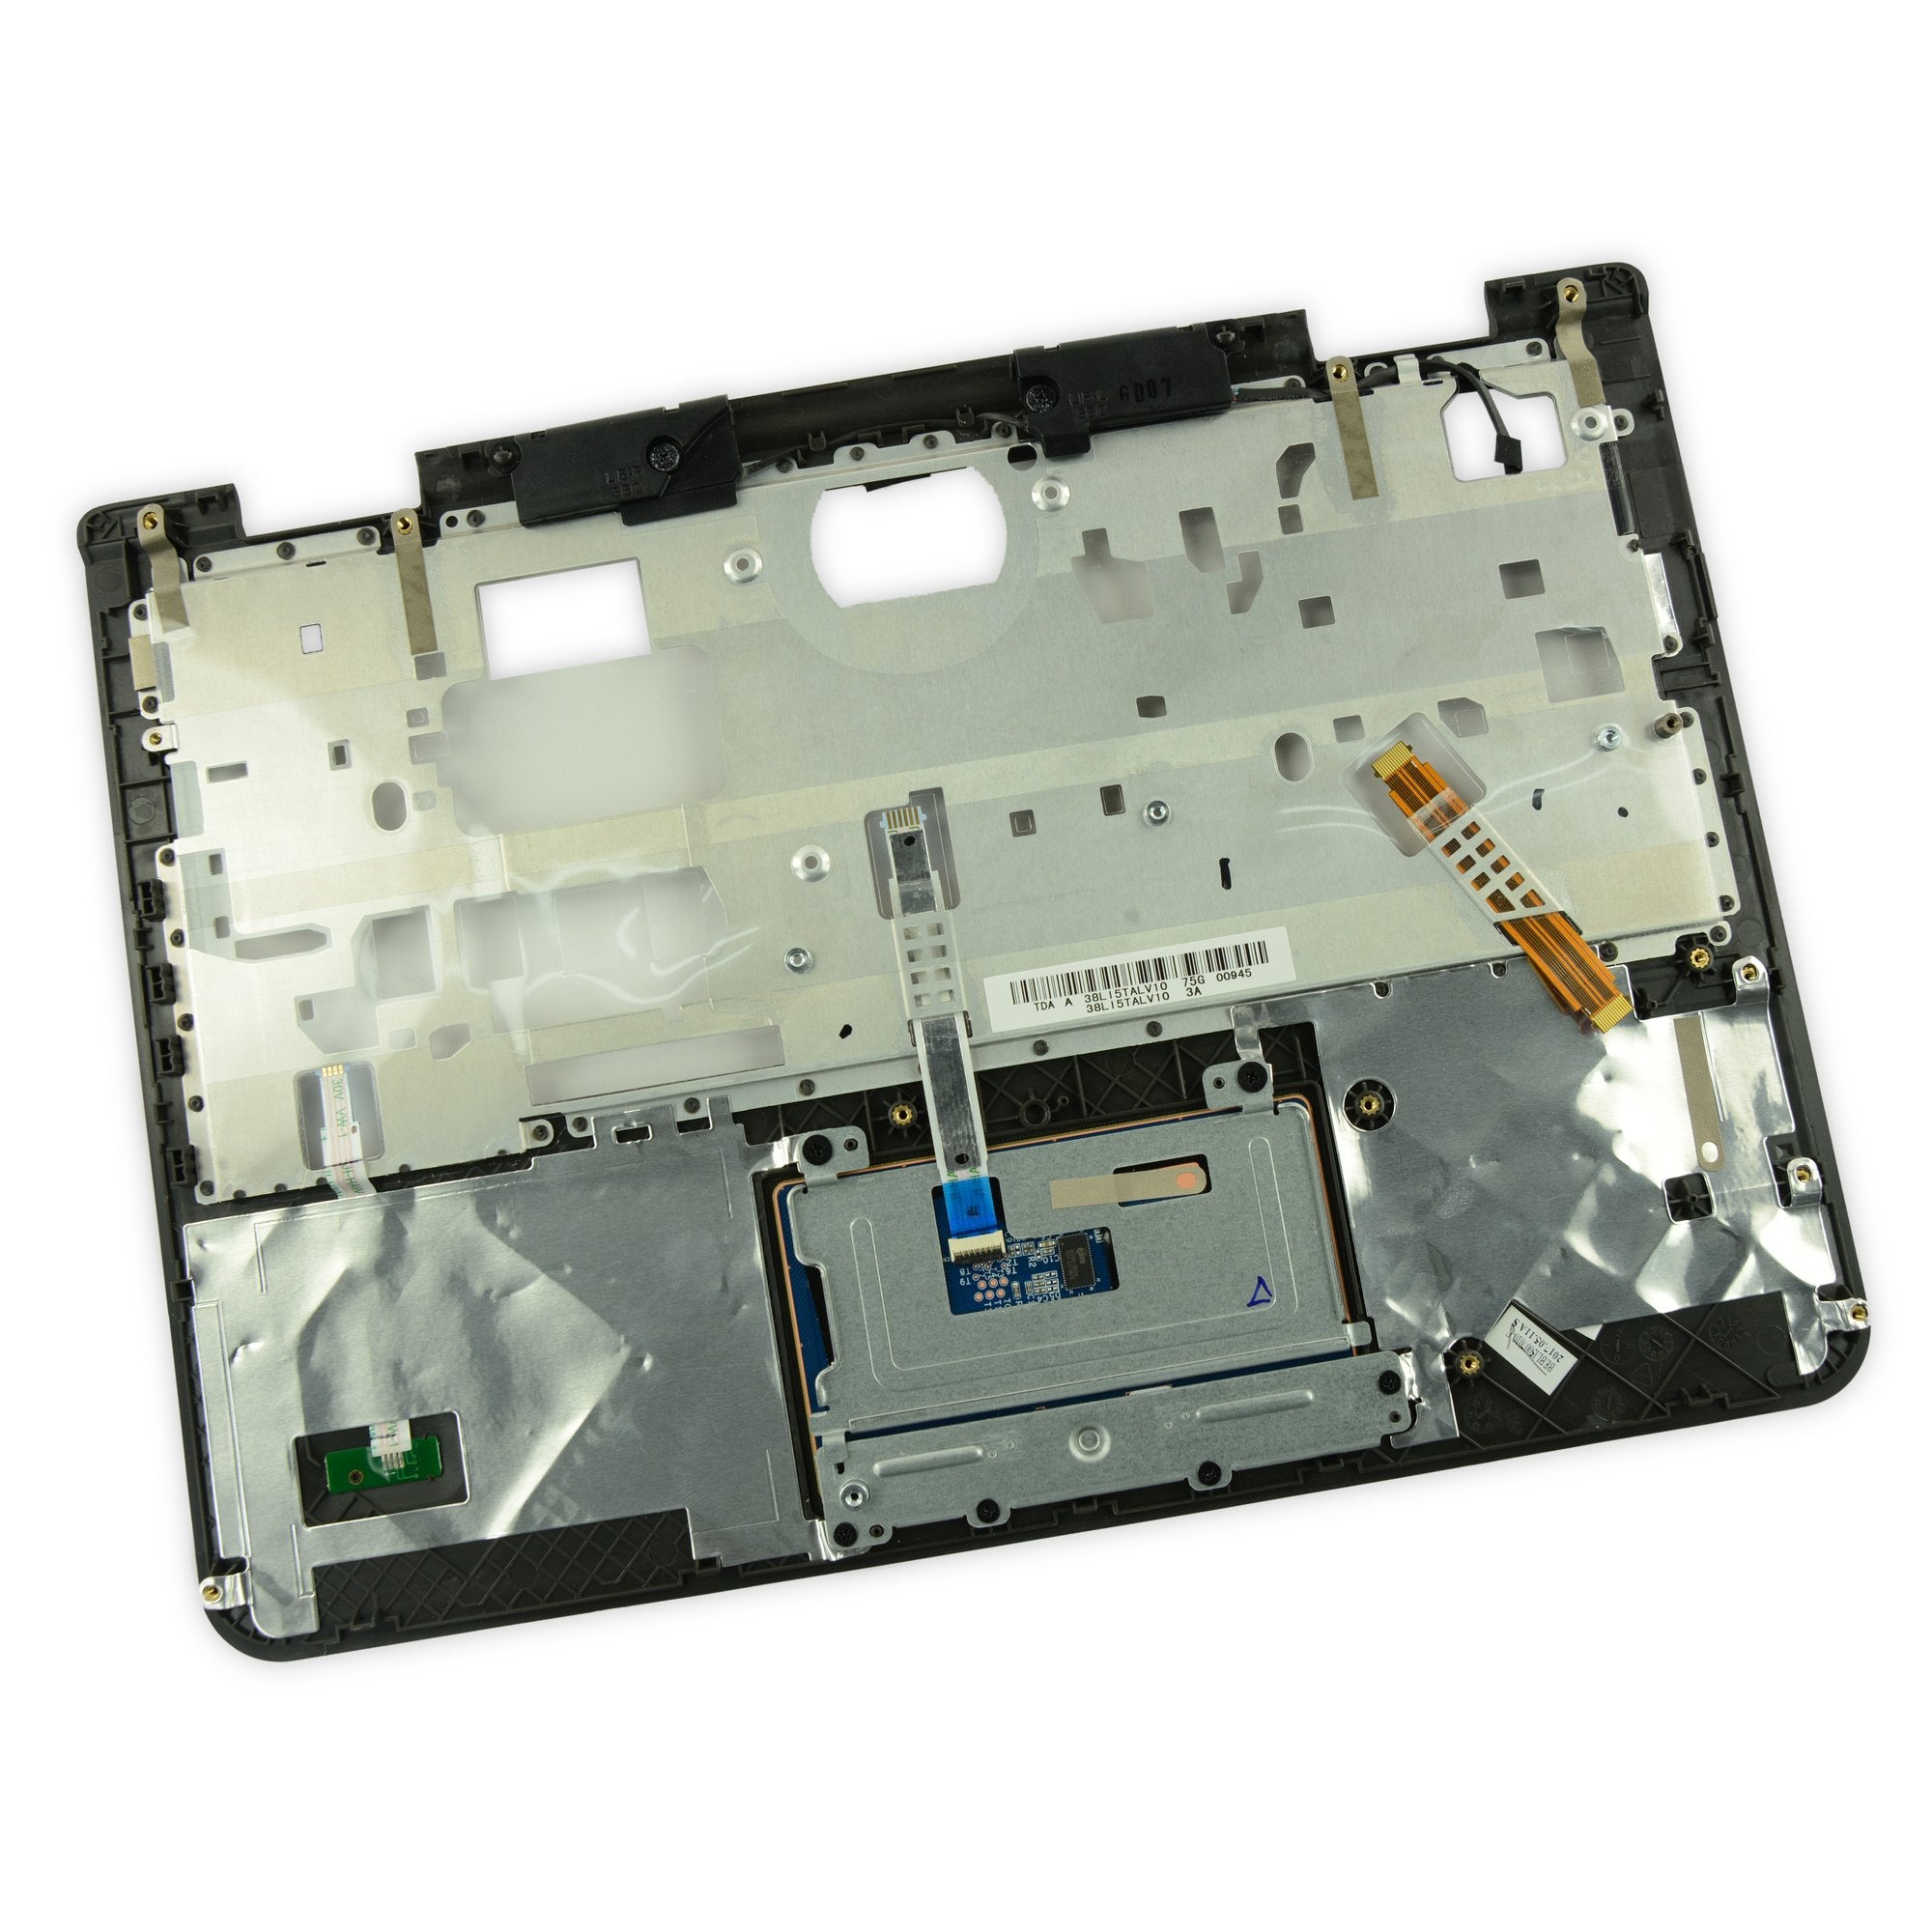 Lenovo Chromebook 11e (1st Gen) ThinkPad Palmrest Touchpad Assembly